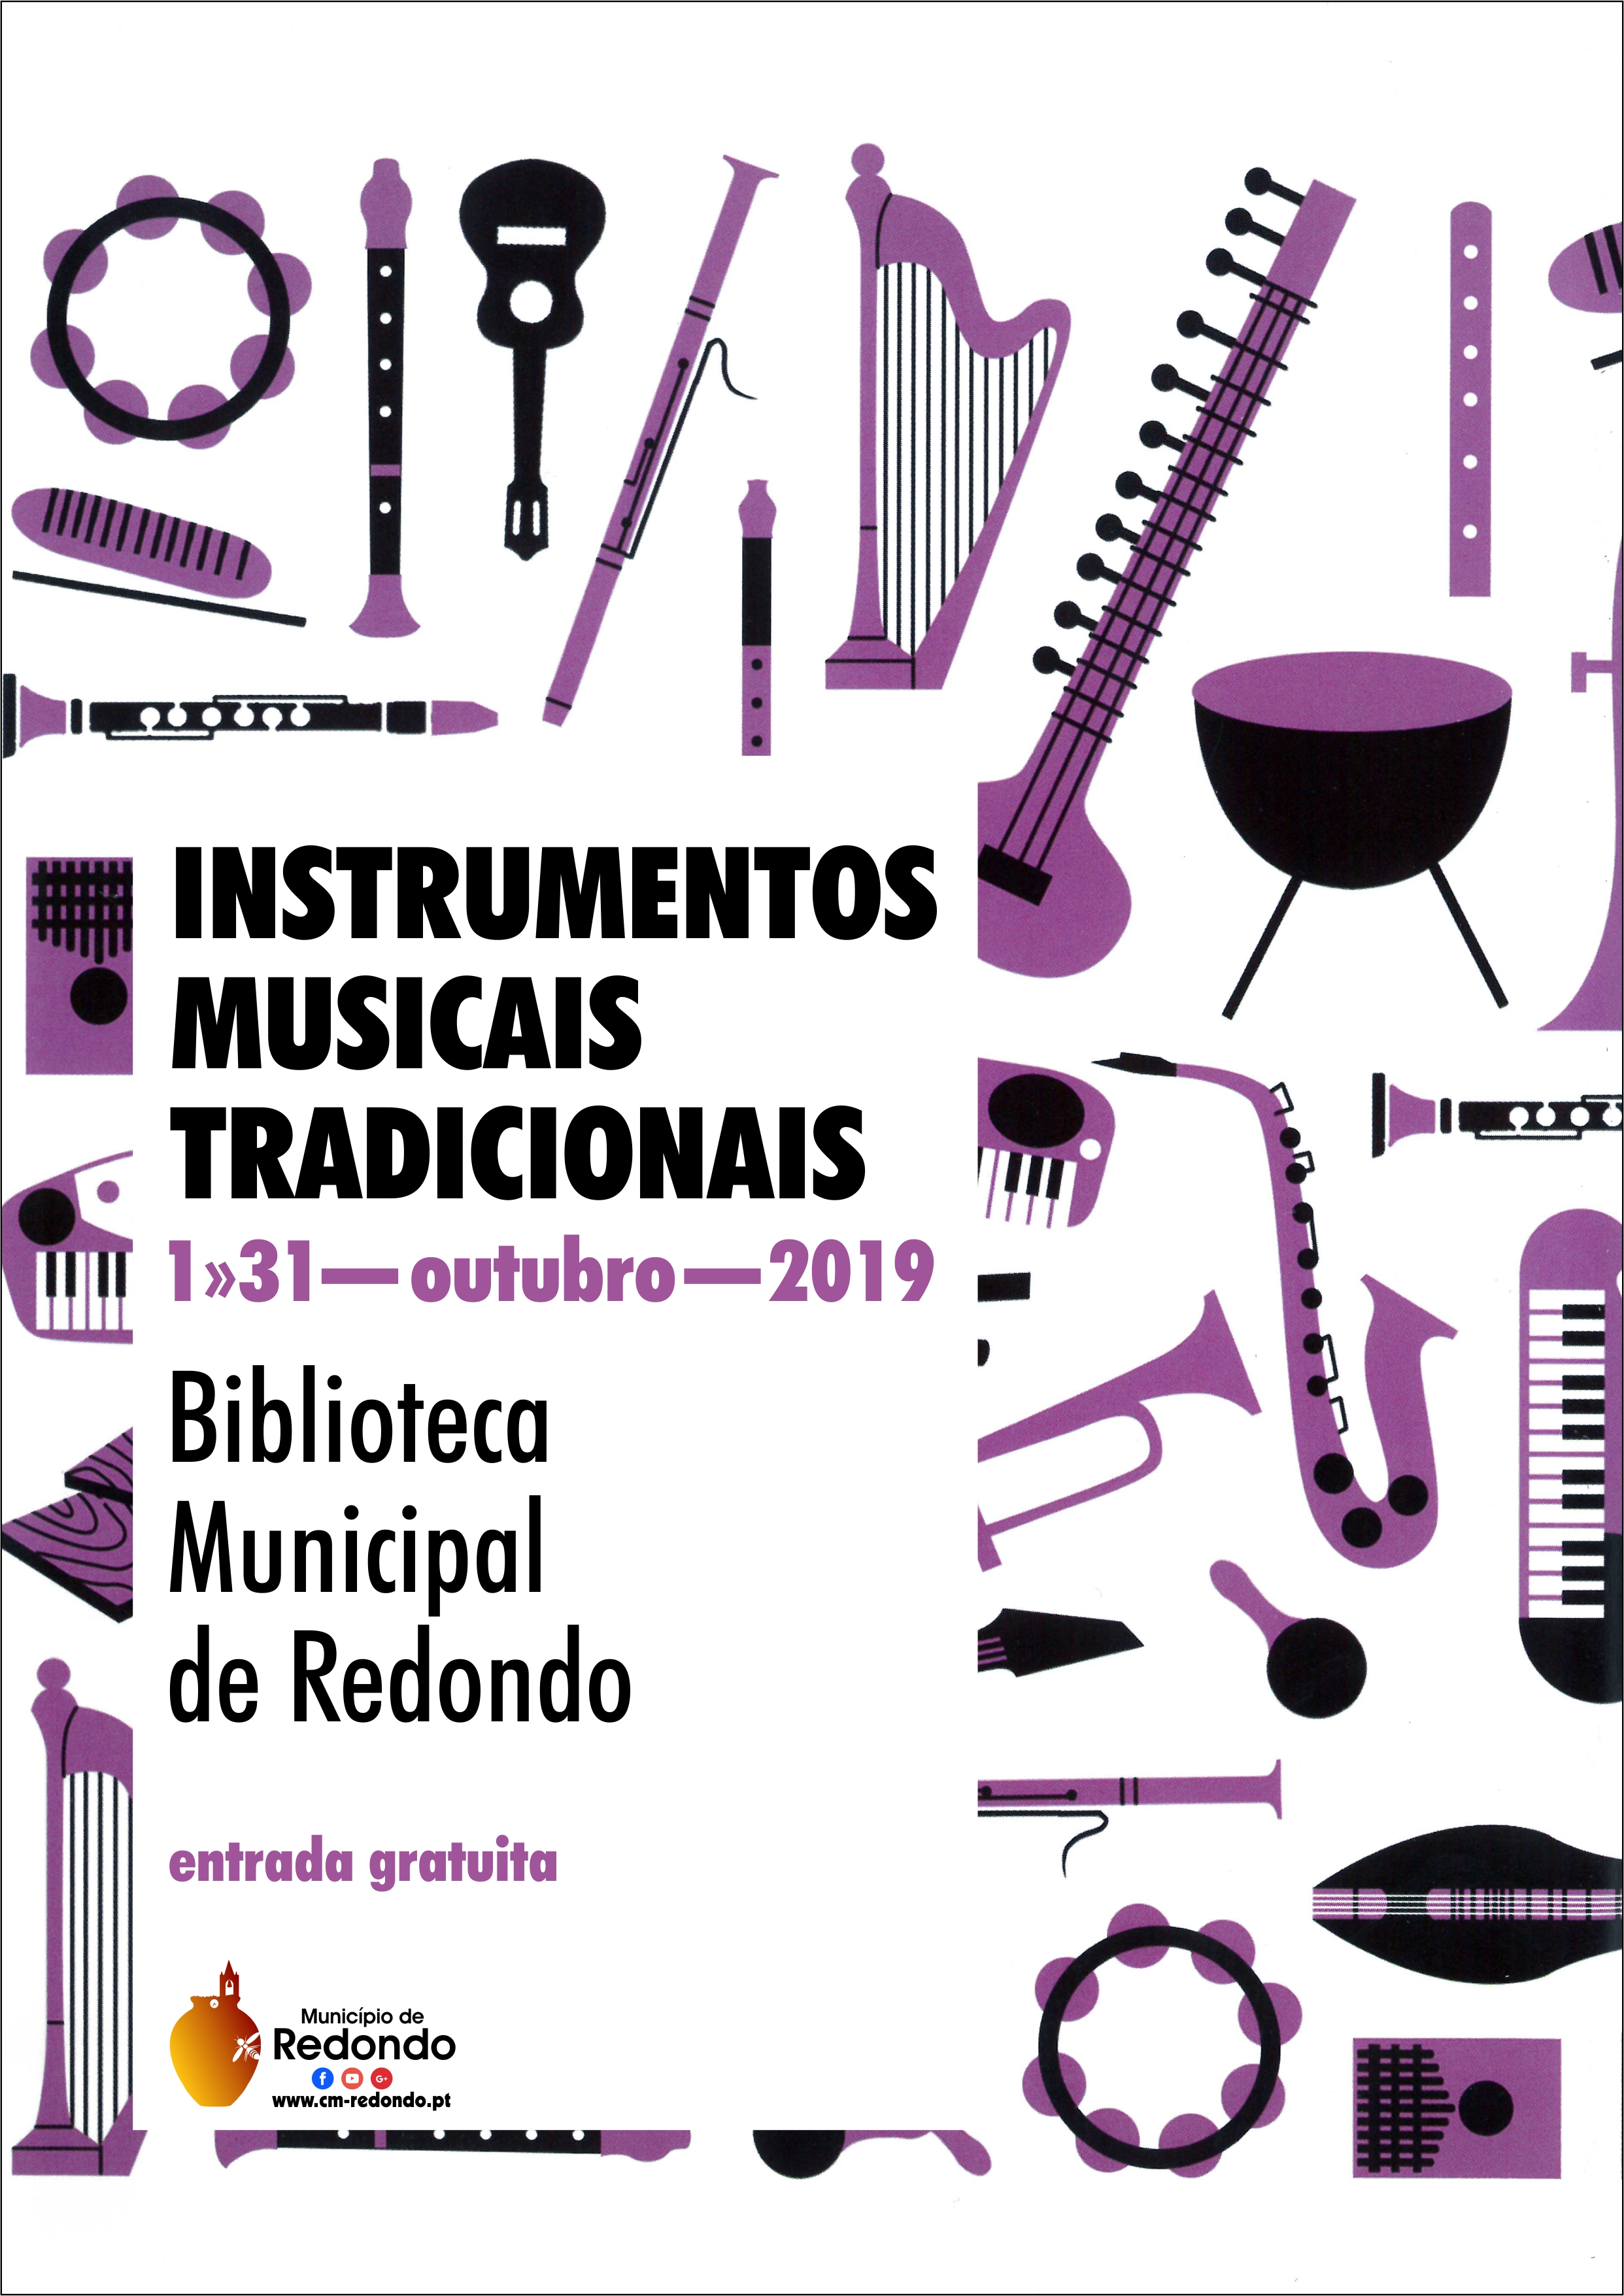 InstrumentosMusicaisTradicionais_F_0_1594717937.